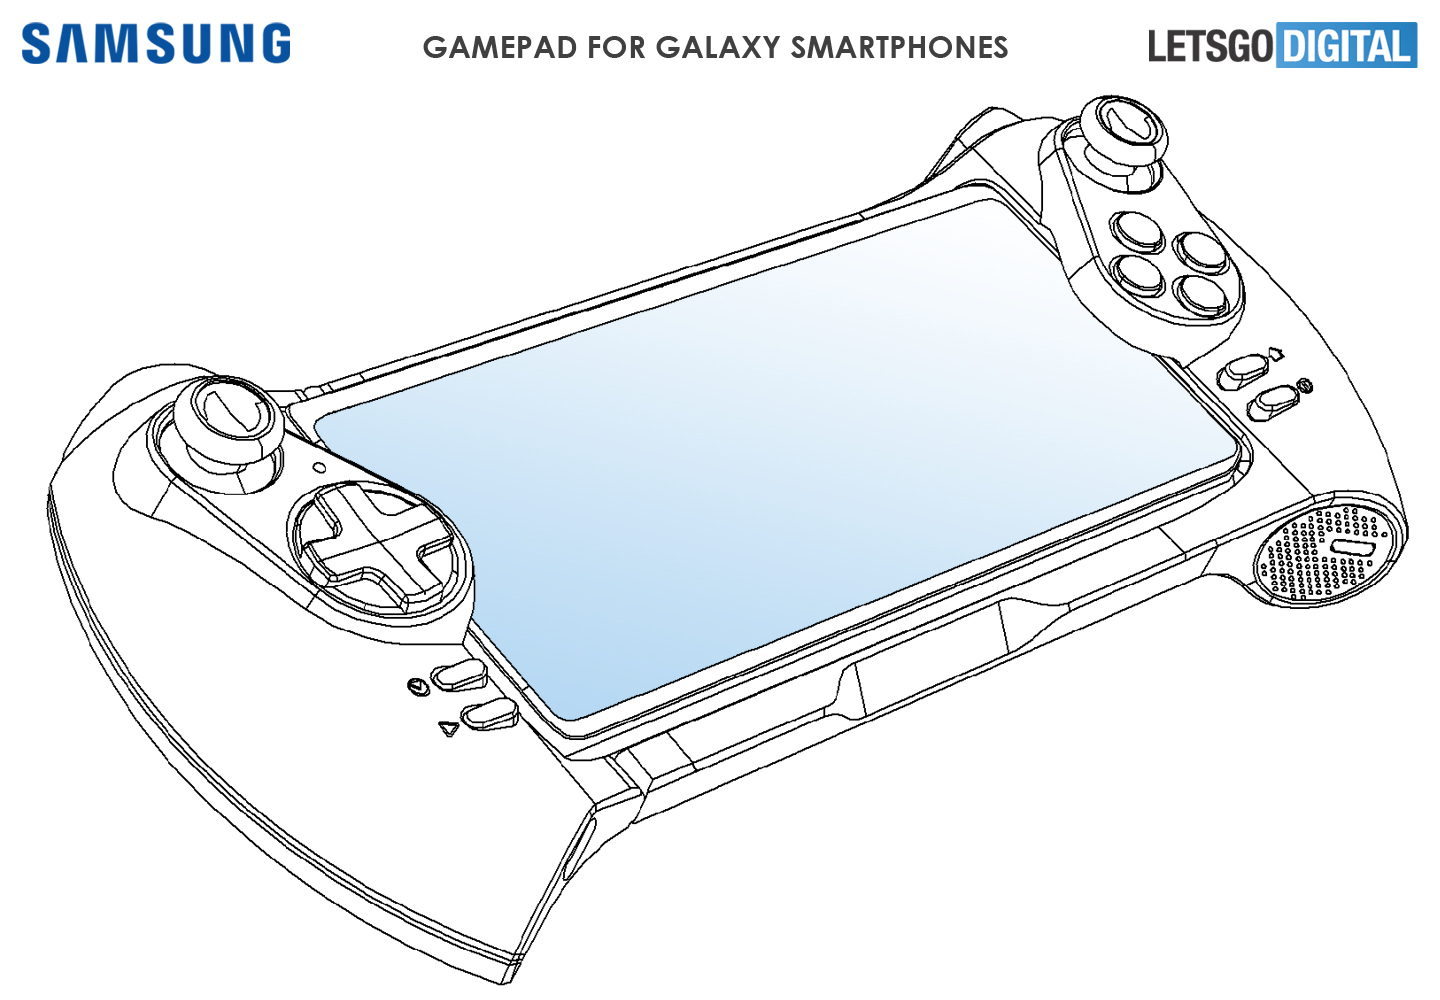 Galaxy smartphones